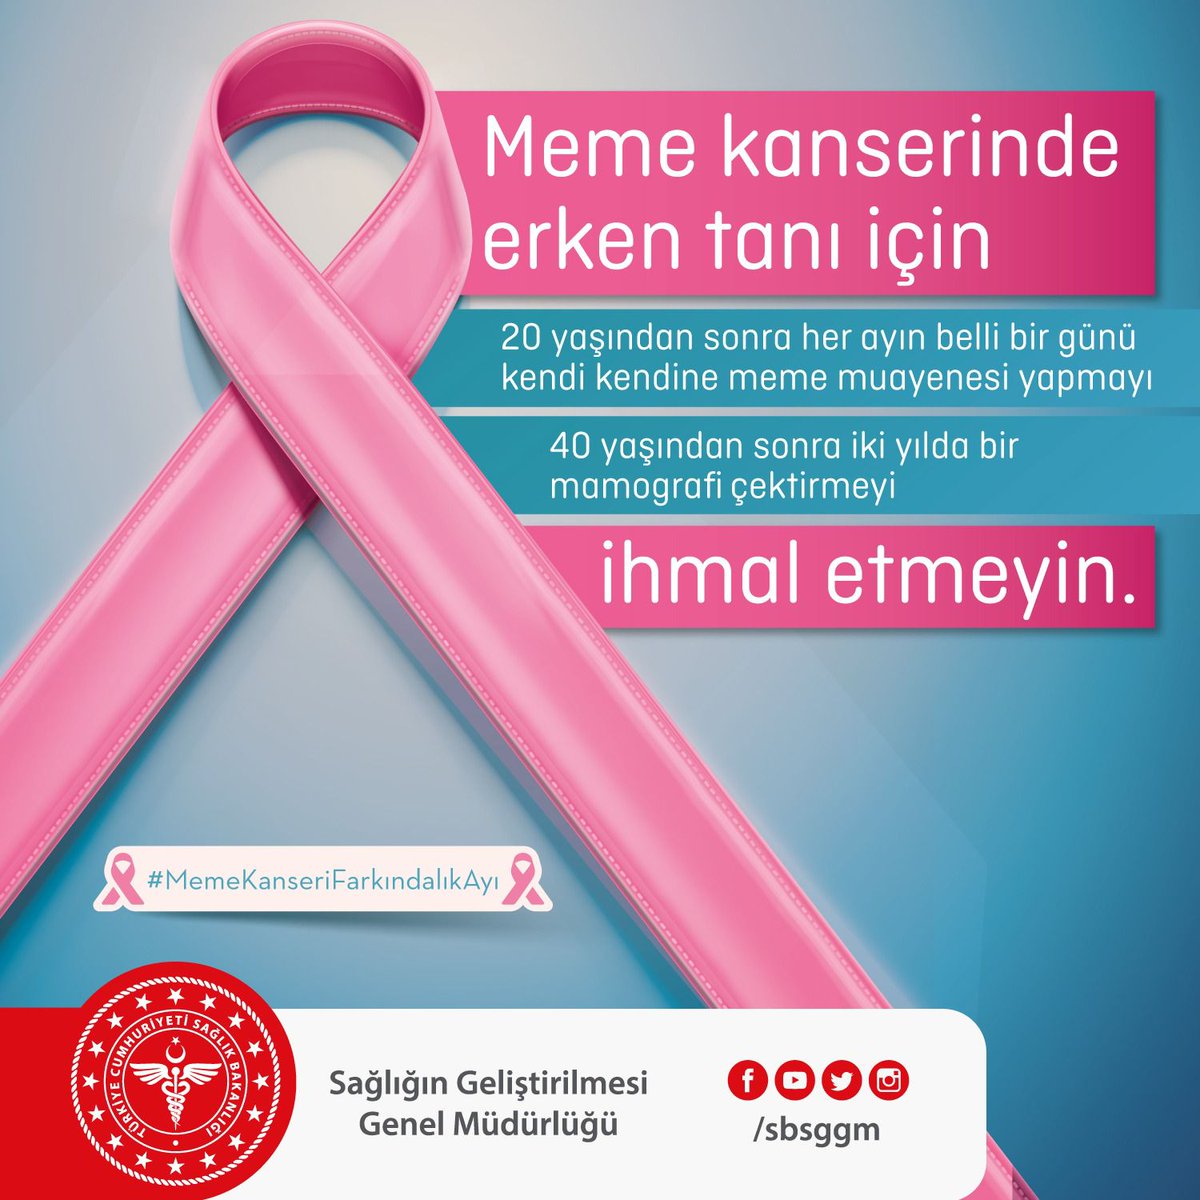 Meme kanserinde erken tanı için - 20 yaşından sonra her ayın belli bir günü kendi kendine meme muayenesi yapmayı - 40 yaşından sonra iki yılda bir mamografi çektirmeyi ihmal etmeyin. #MemeKanseriFarkındalıkAyı